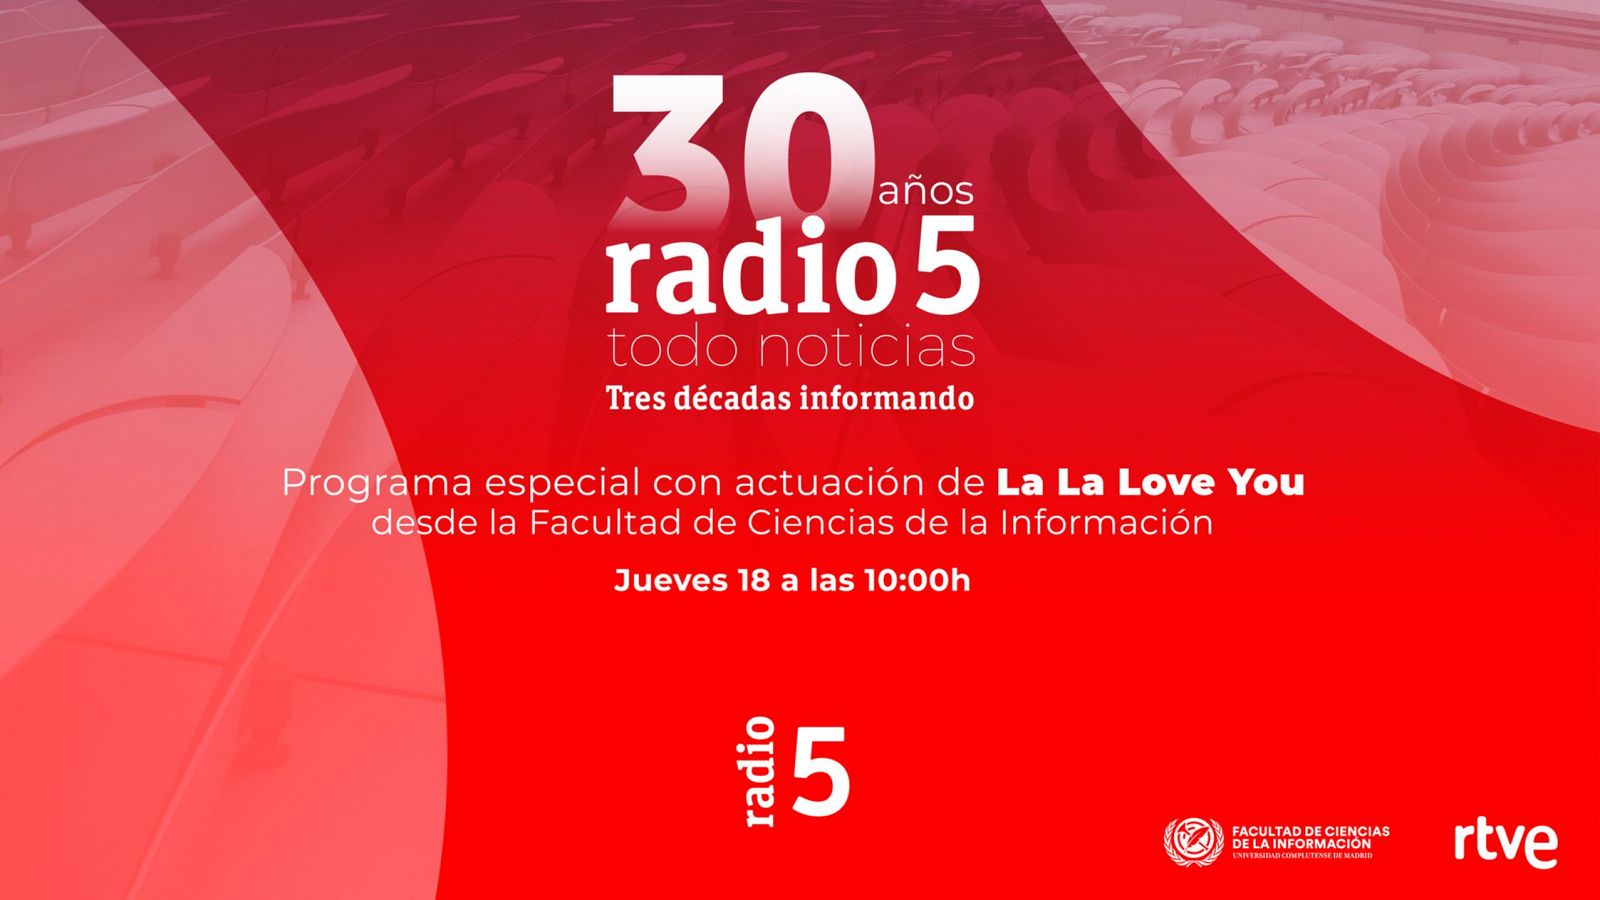 Programación especial de Radio 5 desde la Universidad Complutense de Madrid por su 30º aniversario